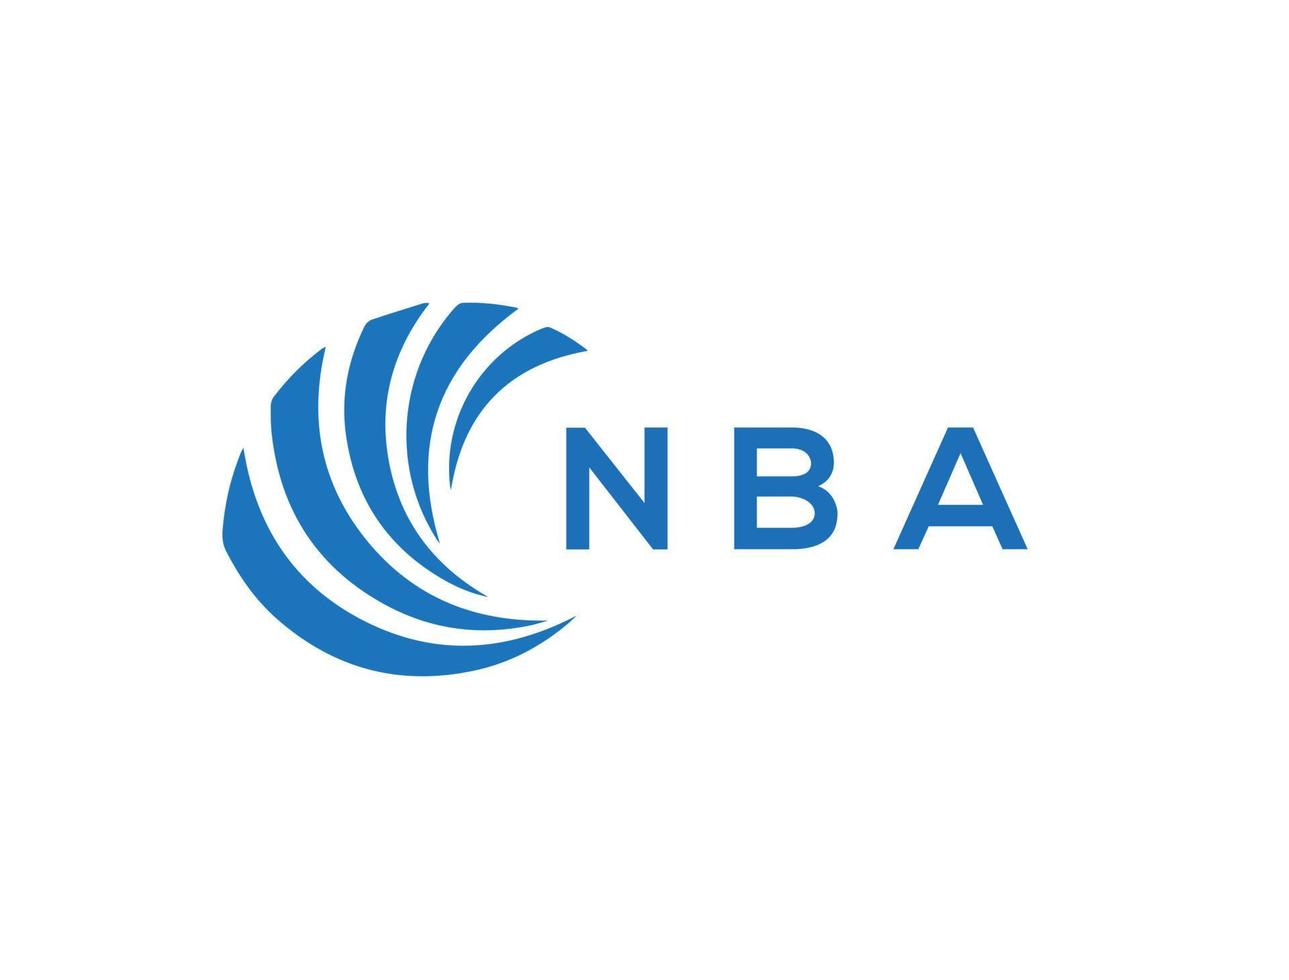 NBA letter logo design on white background. NBA creative circle letter logo concept. NBA letter design. vector